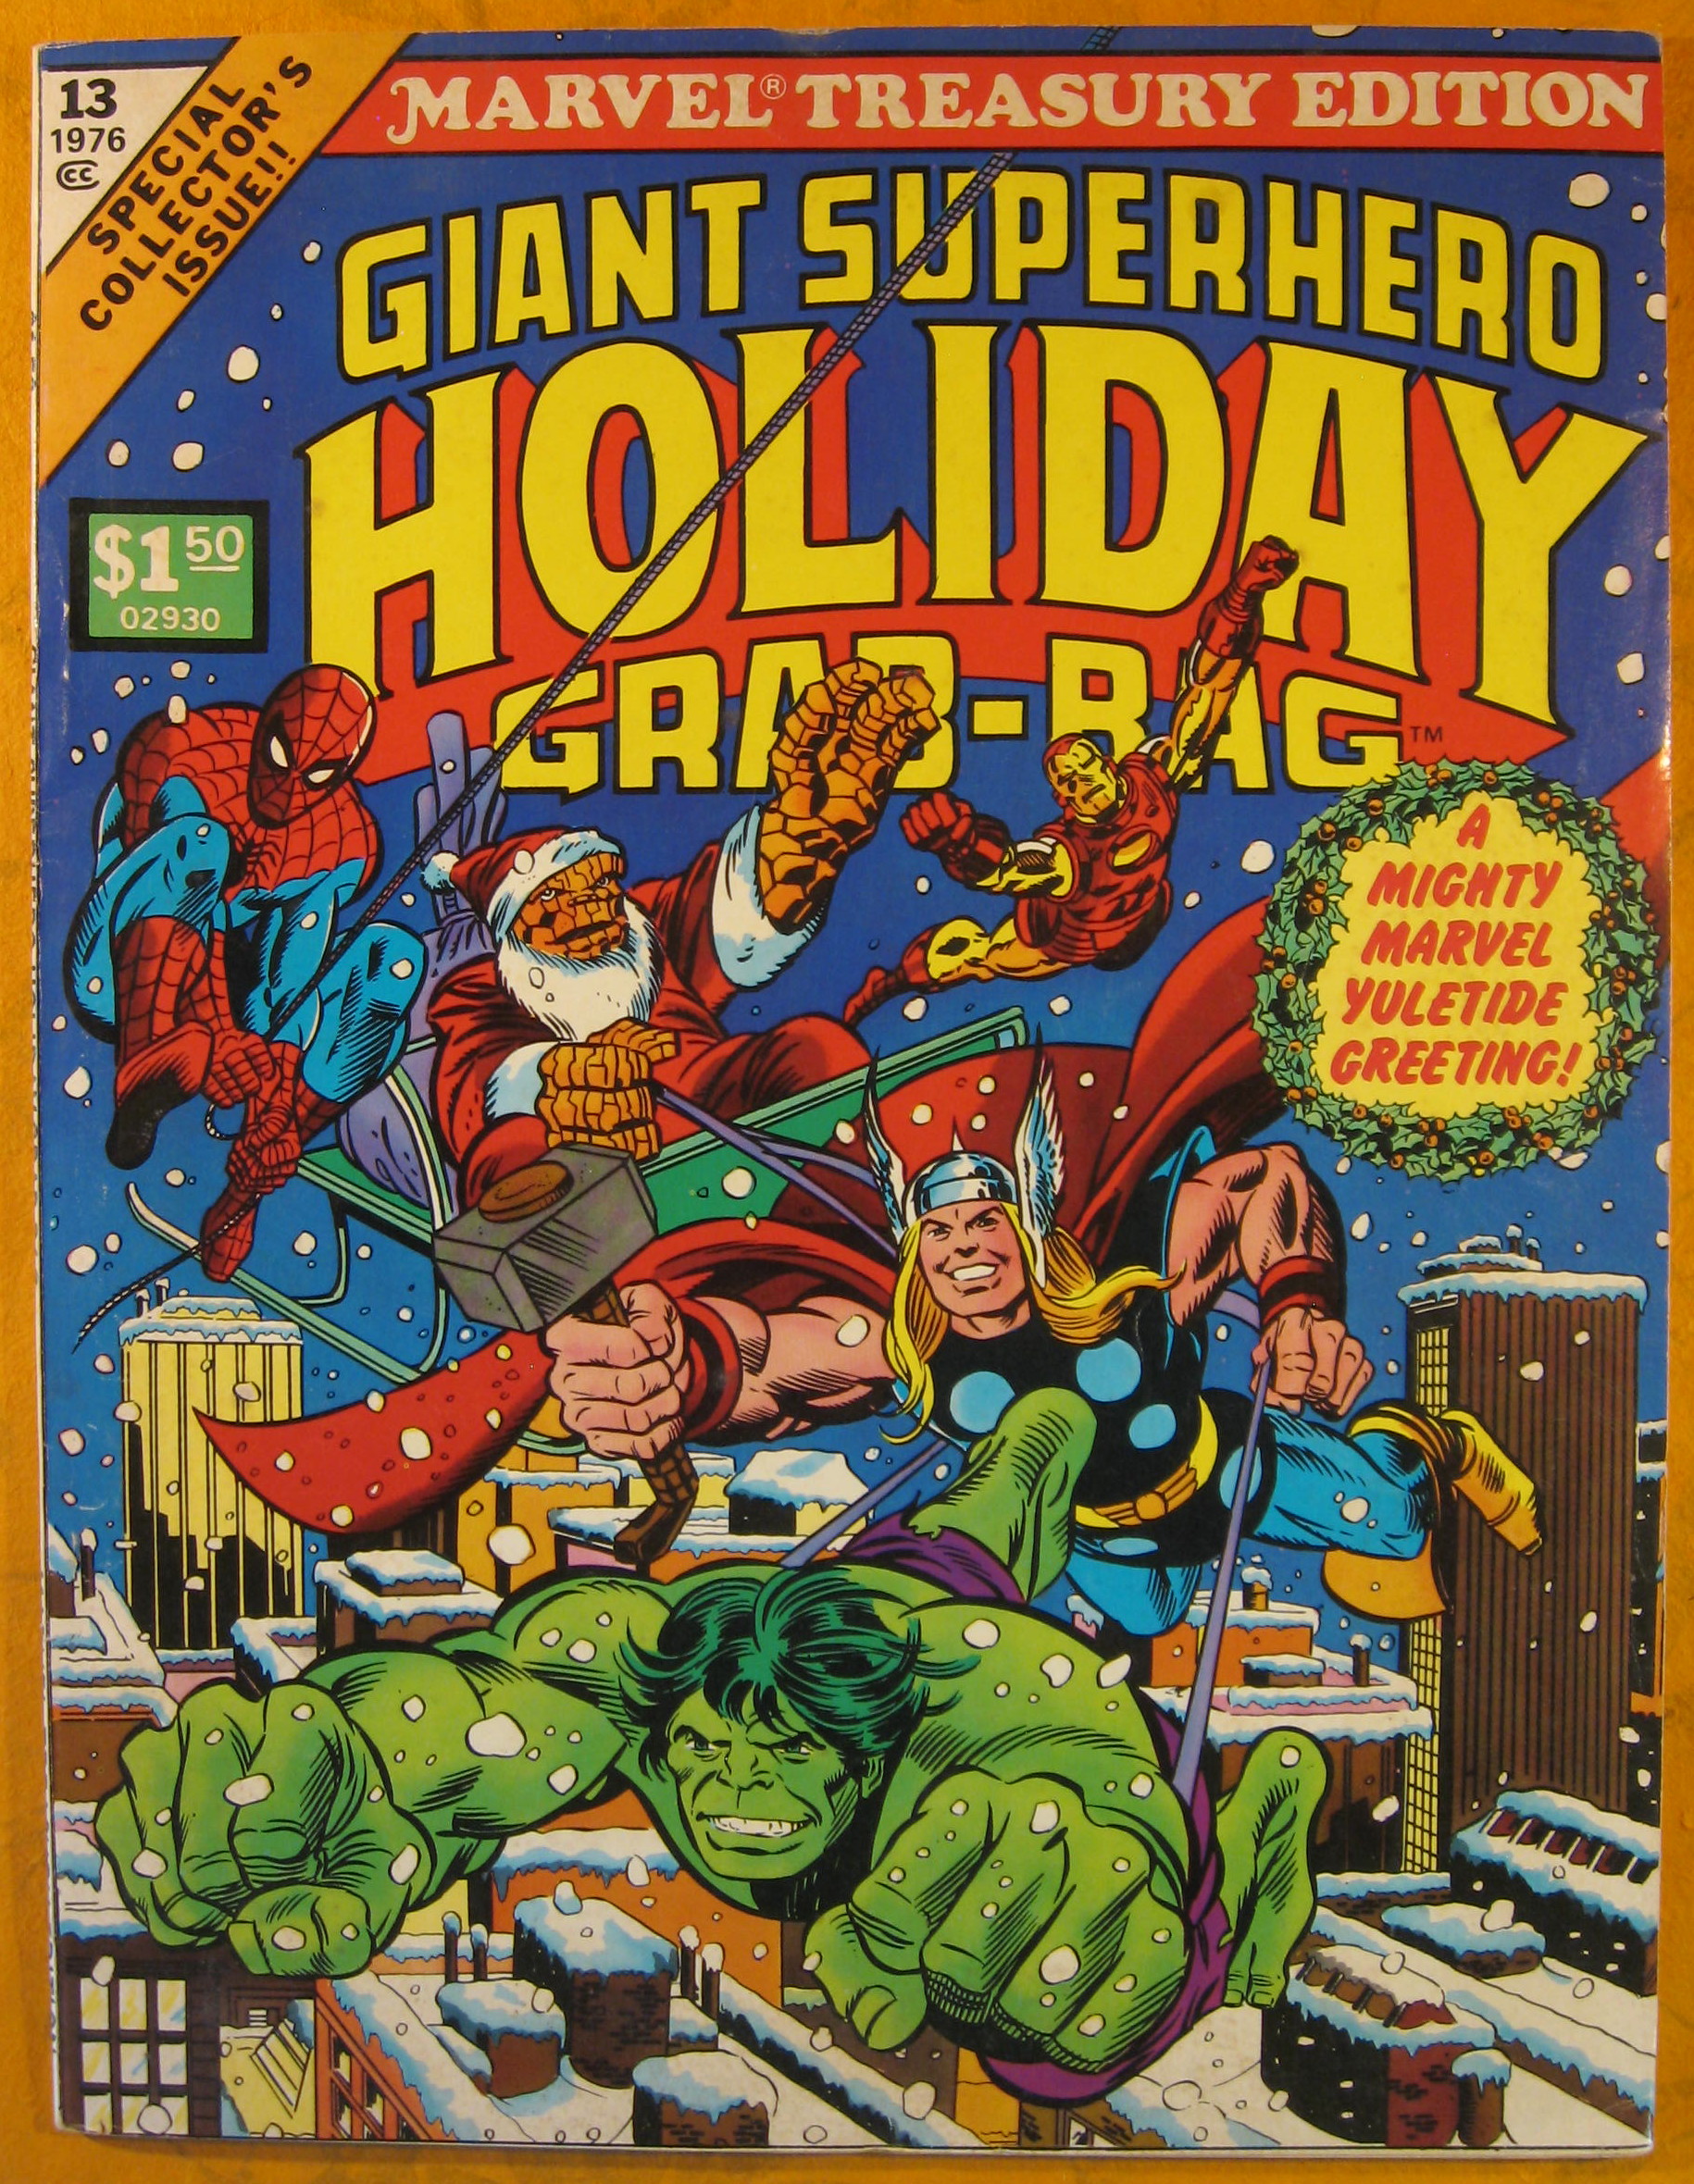 Image for Marvel Treasury Edition:  Giant Superhero Holiday Grab-Bag